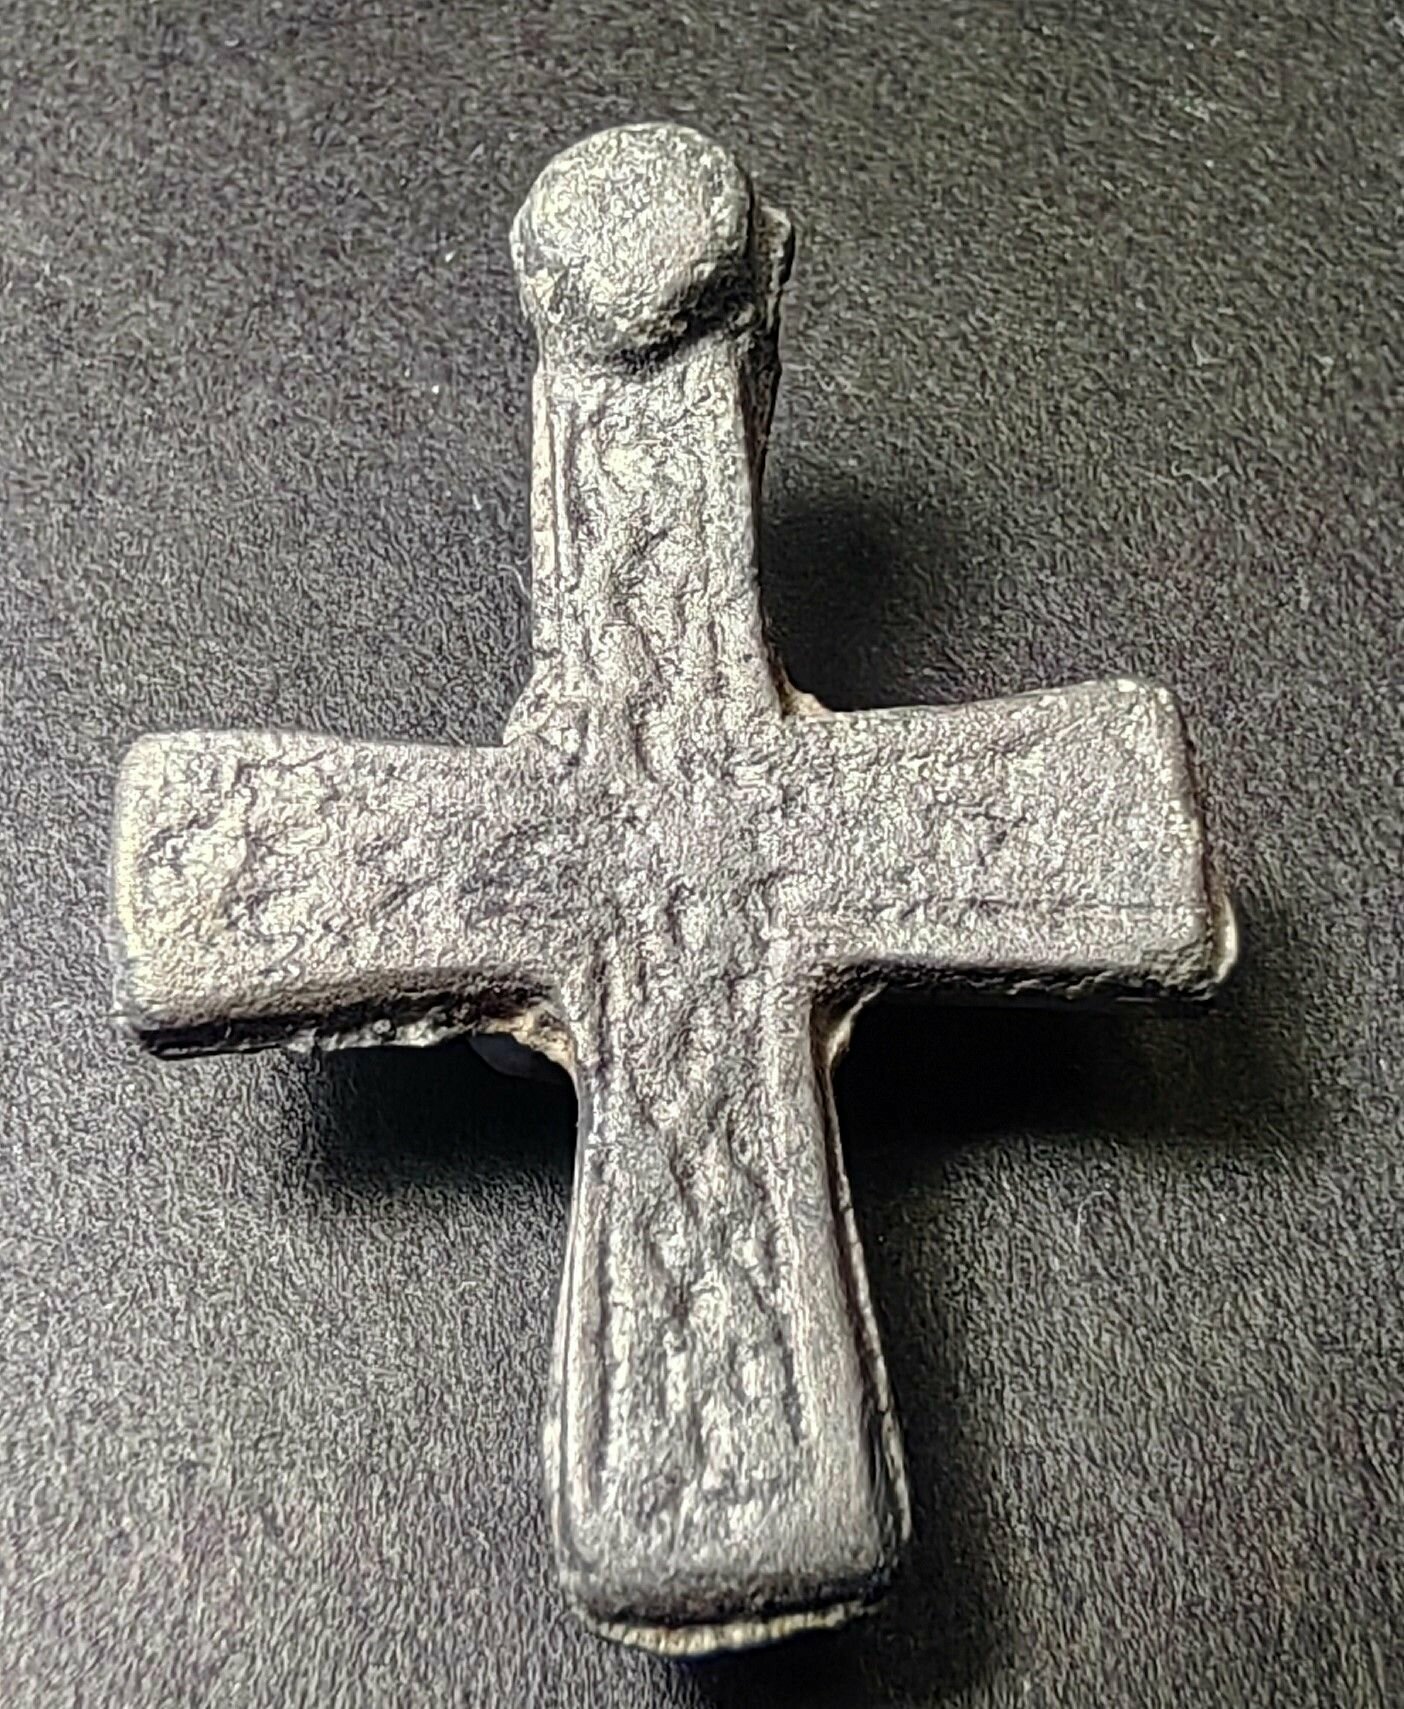 Крест с четырехременной плетенкой 15 века. Ставрографофилия Средневековый крест плетёнка